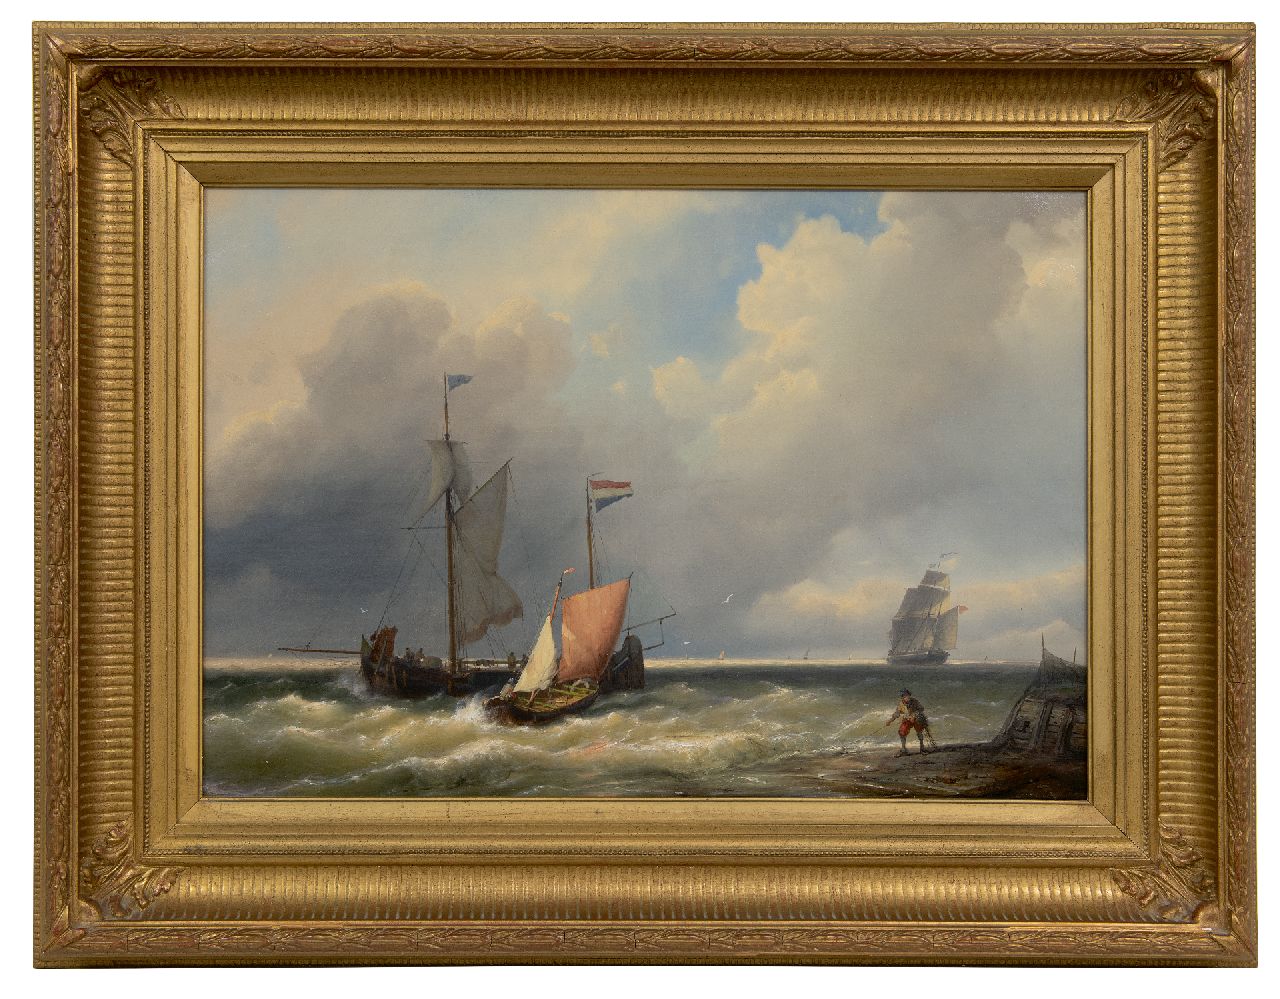 Koekkoek J.H.B.  | Johannes Hermanus Barend 'Jan H.B.' Koekkoek | Schilderijen te koop aangeboden | Schepen voor de kust in een stevige bries, olieverf op doek 41,5 x 59,2 cm, gesigneerd rechtsonder